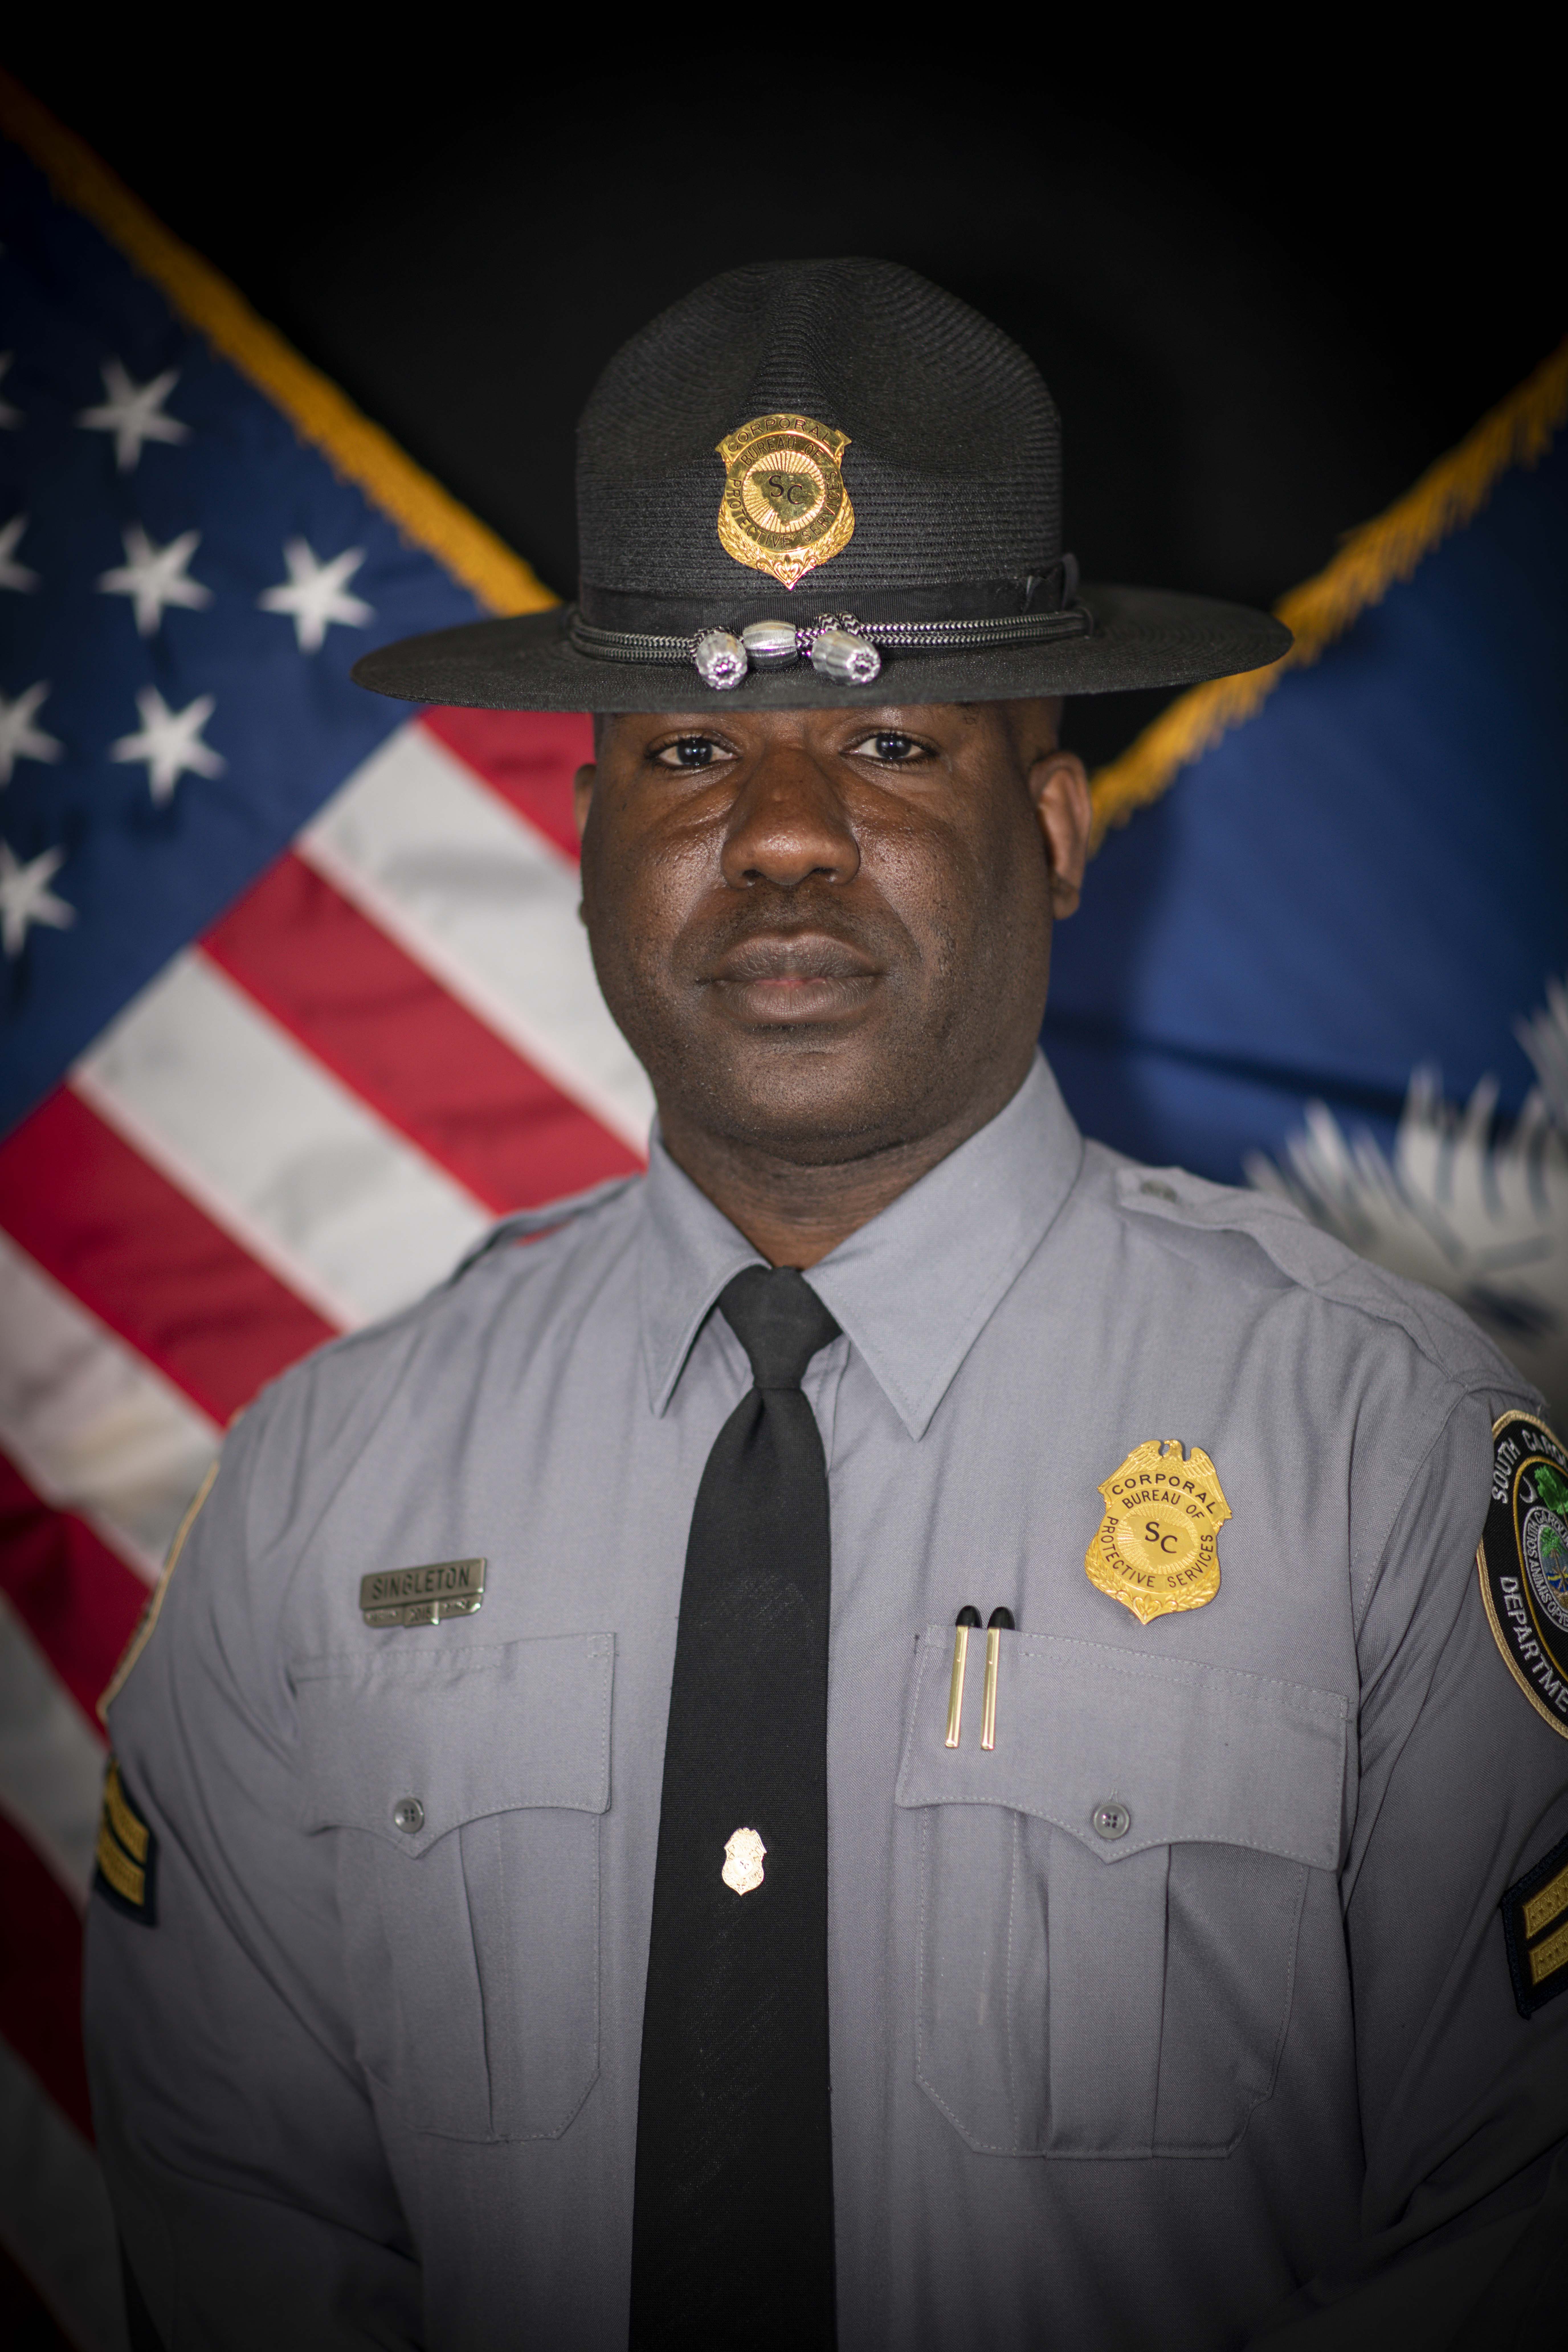 Officer Singleton portrait